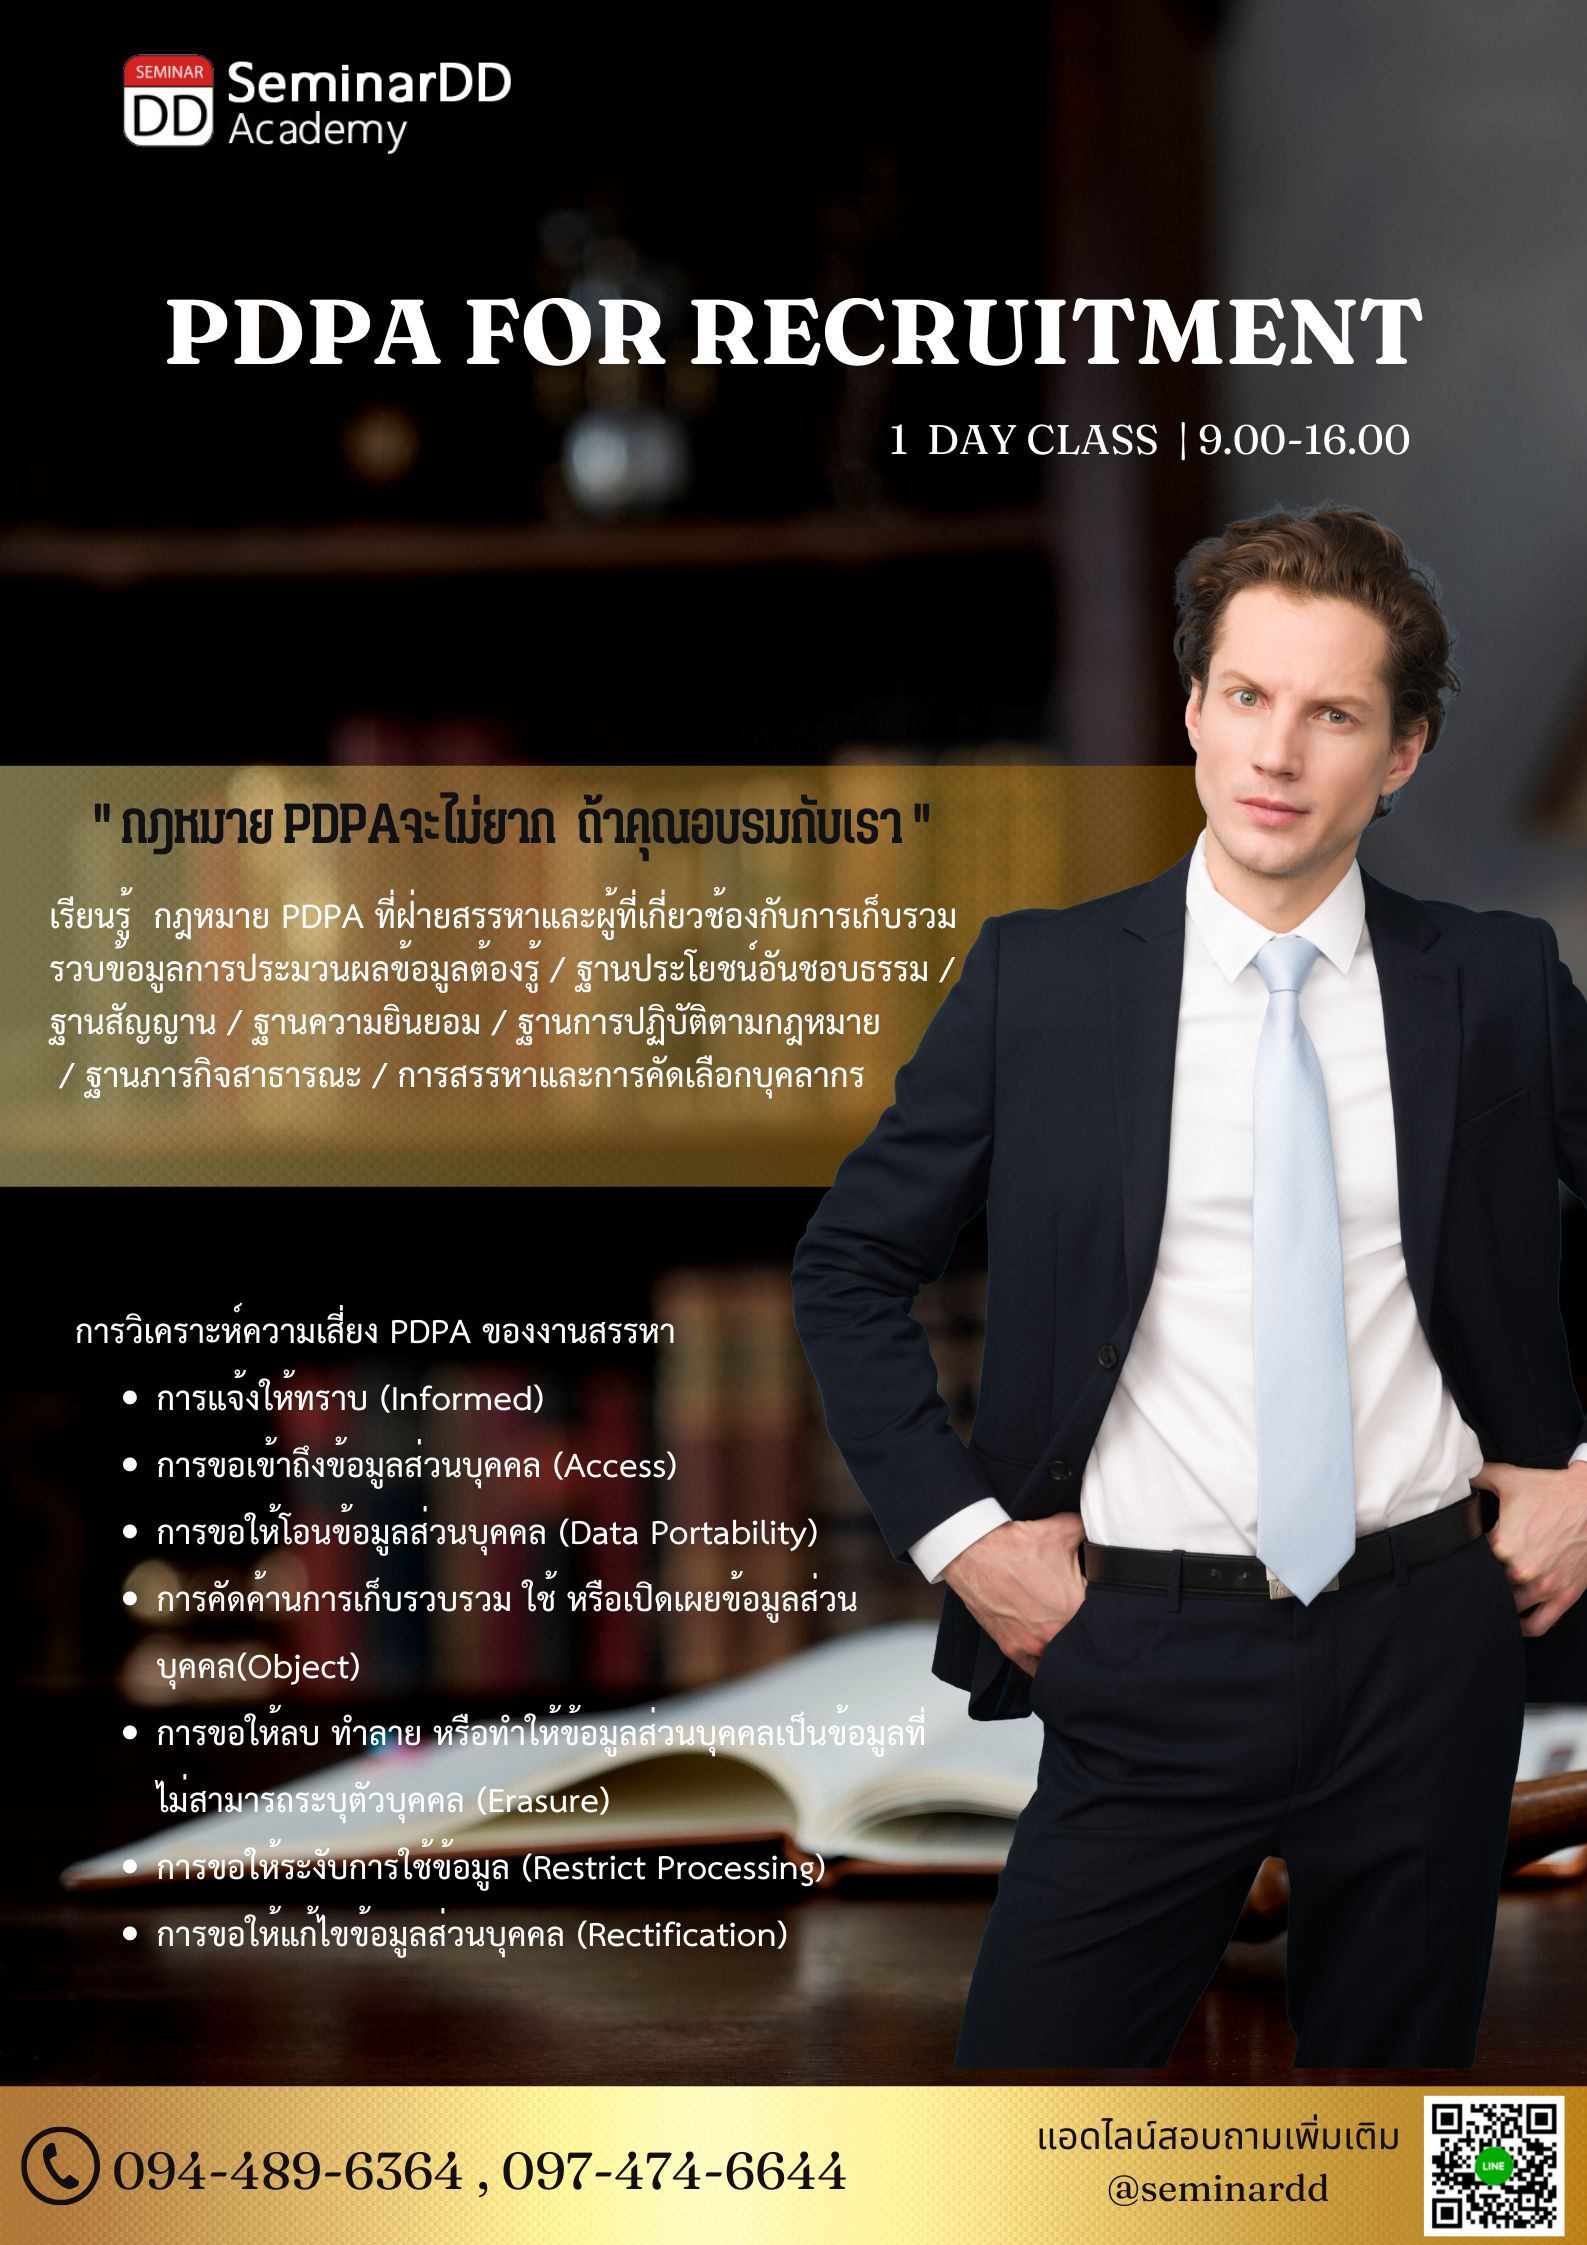 หลักสูตร PDPA for Recruitment / PDPA for HR